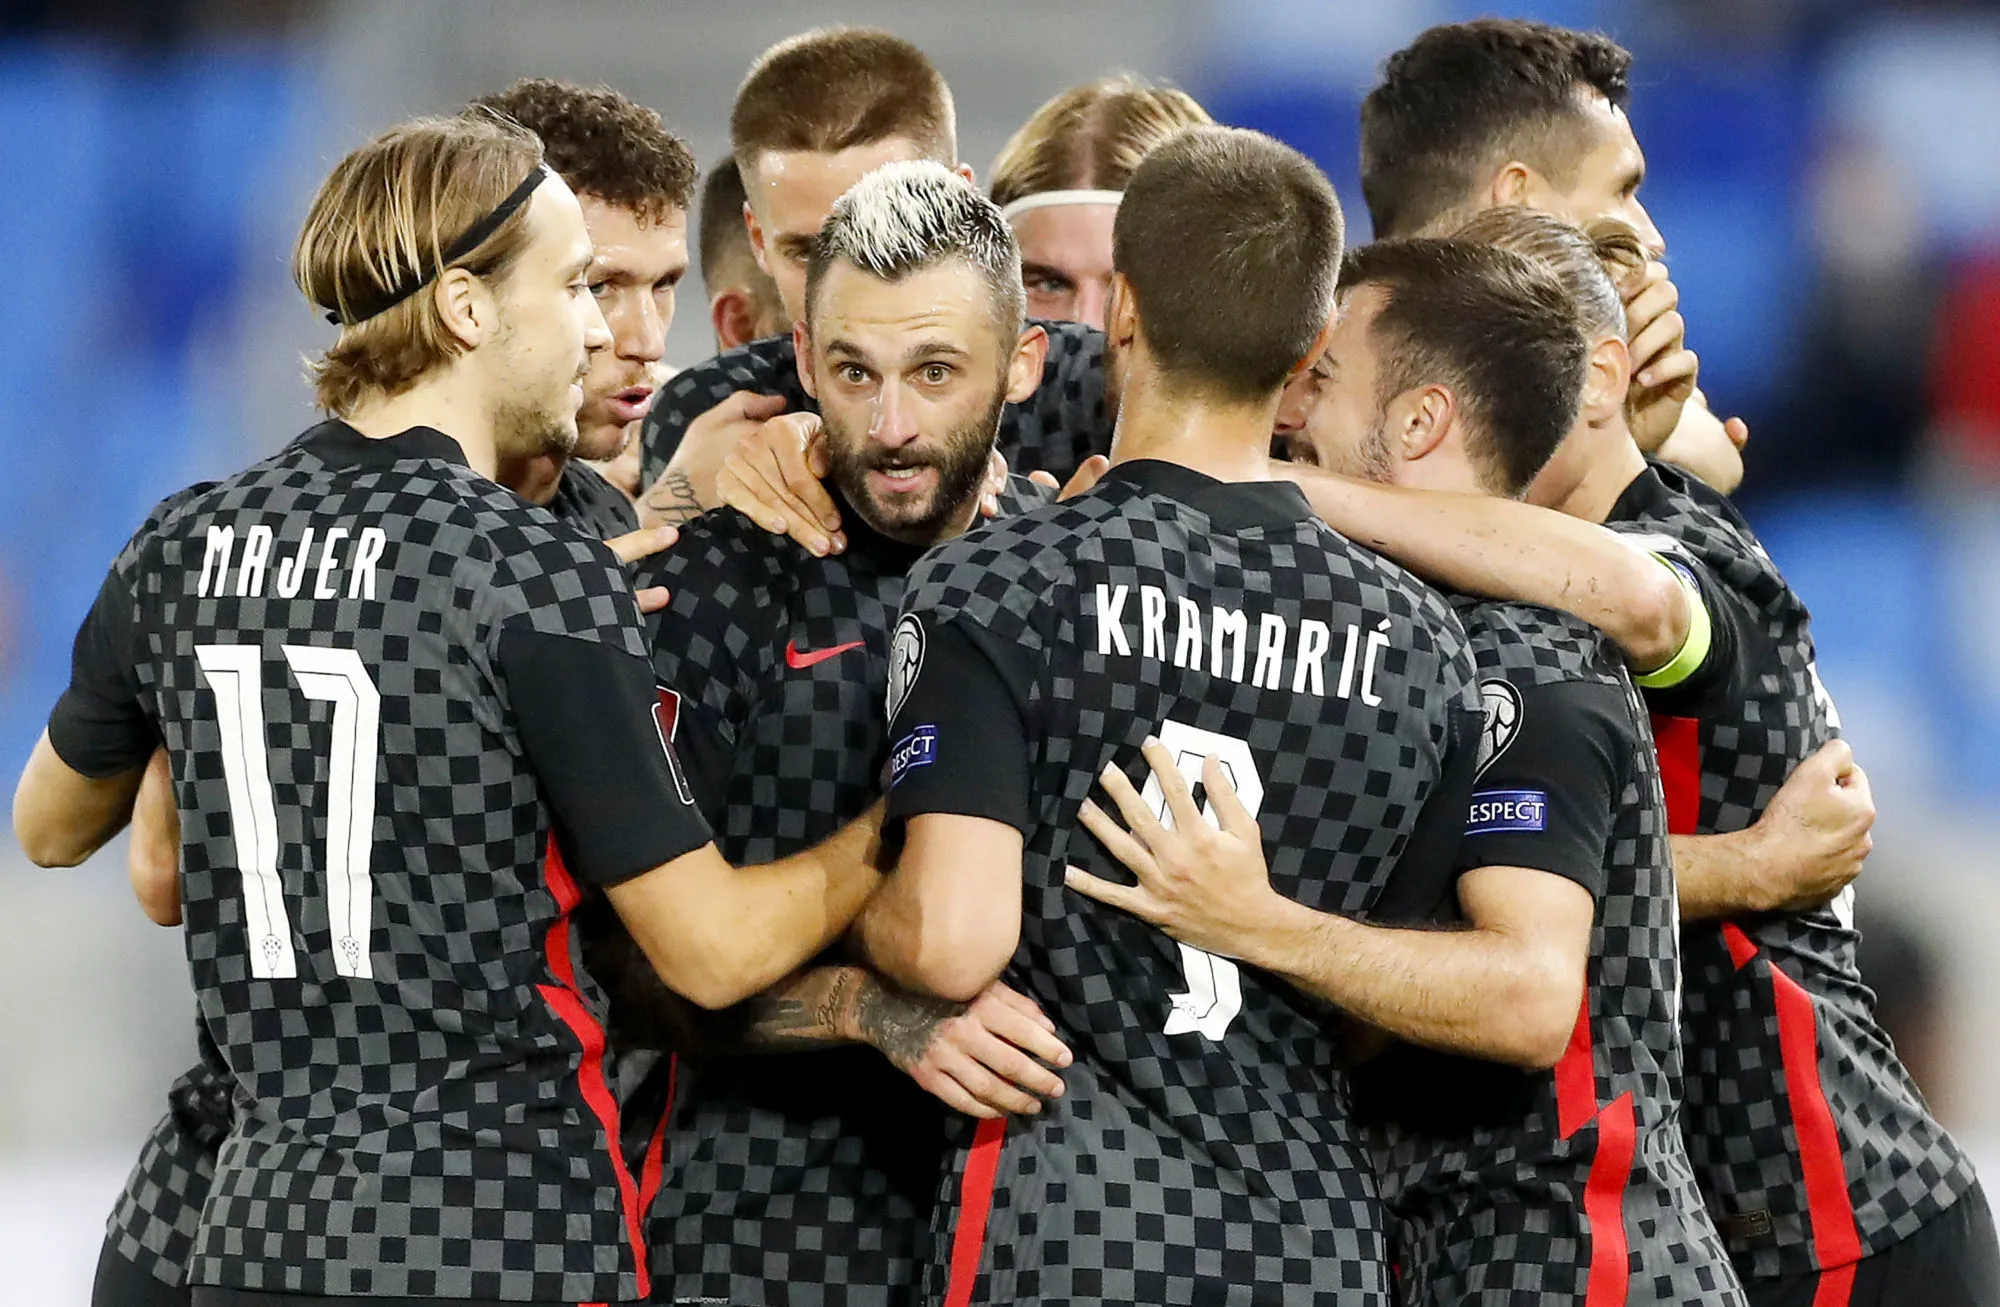 Pronostic Croatie Slovénie : Analyse, cotes et prono du match des éliminatoires pour la Coupe du monde 2022